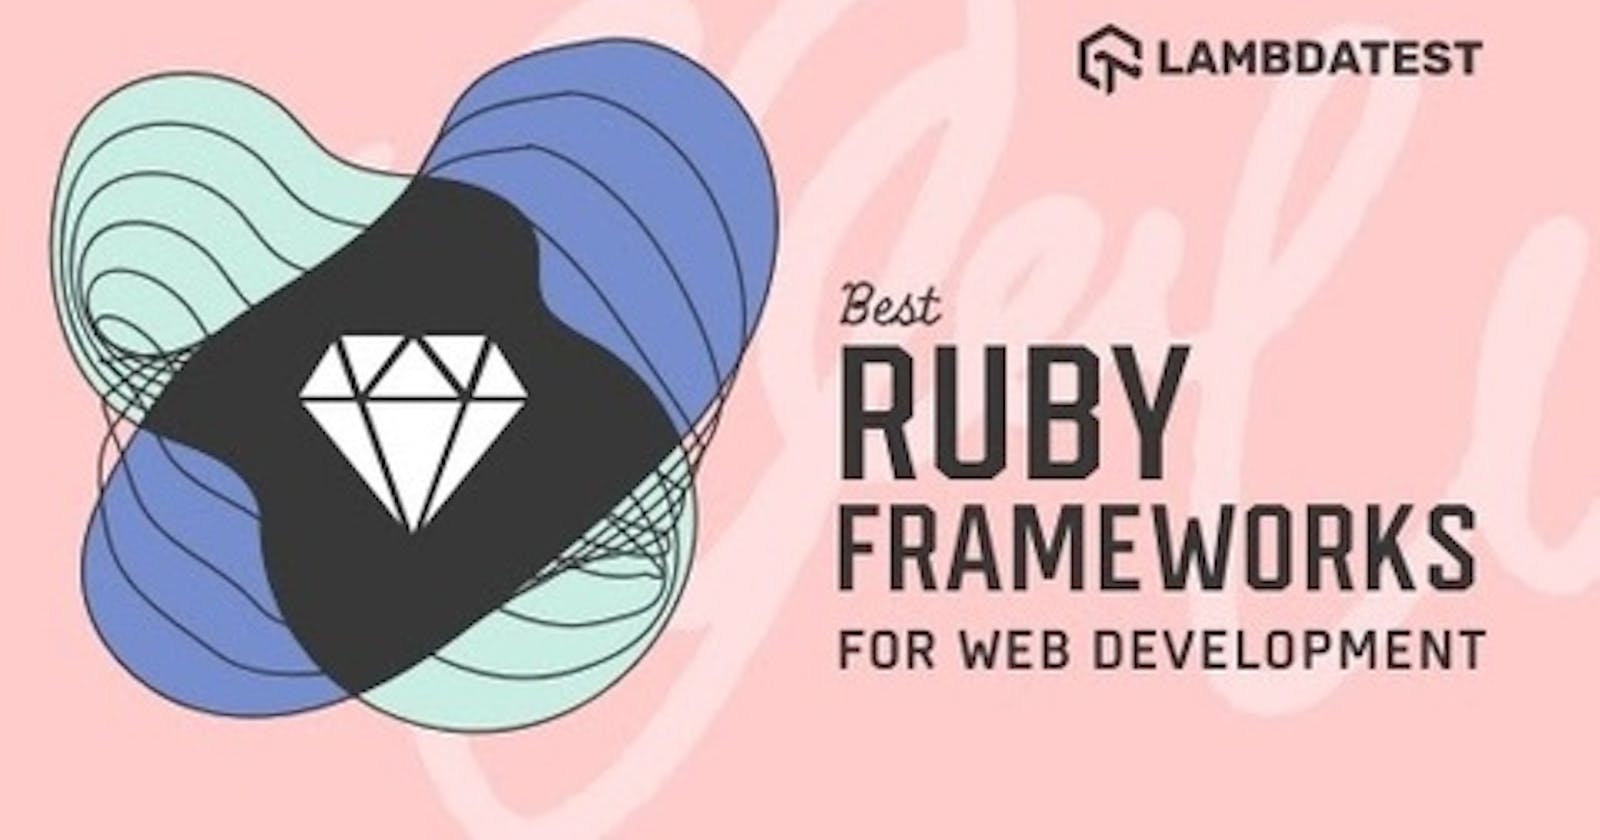 16 Best Ruby Frameworks For Web Development